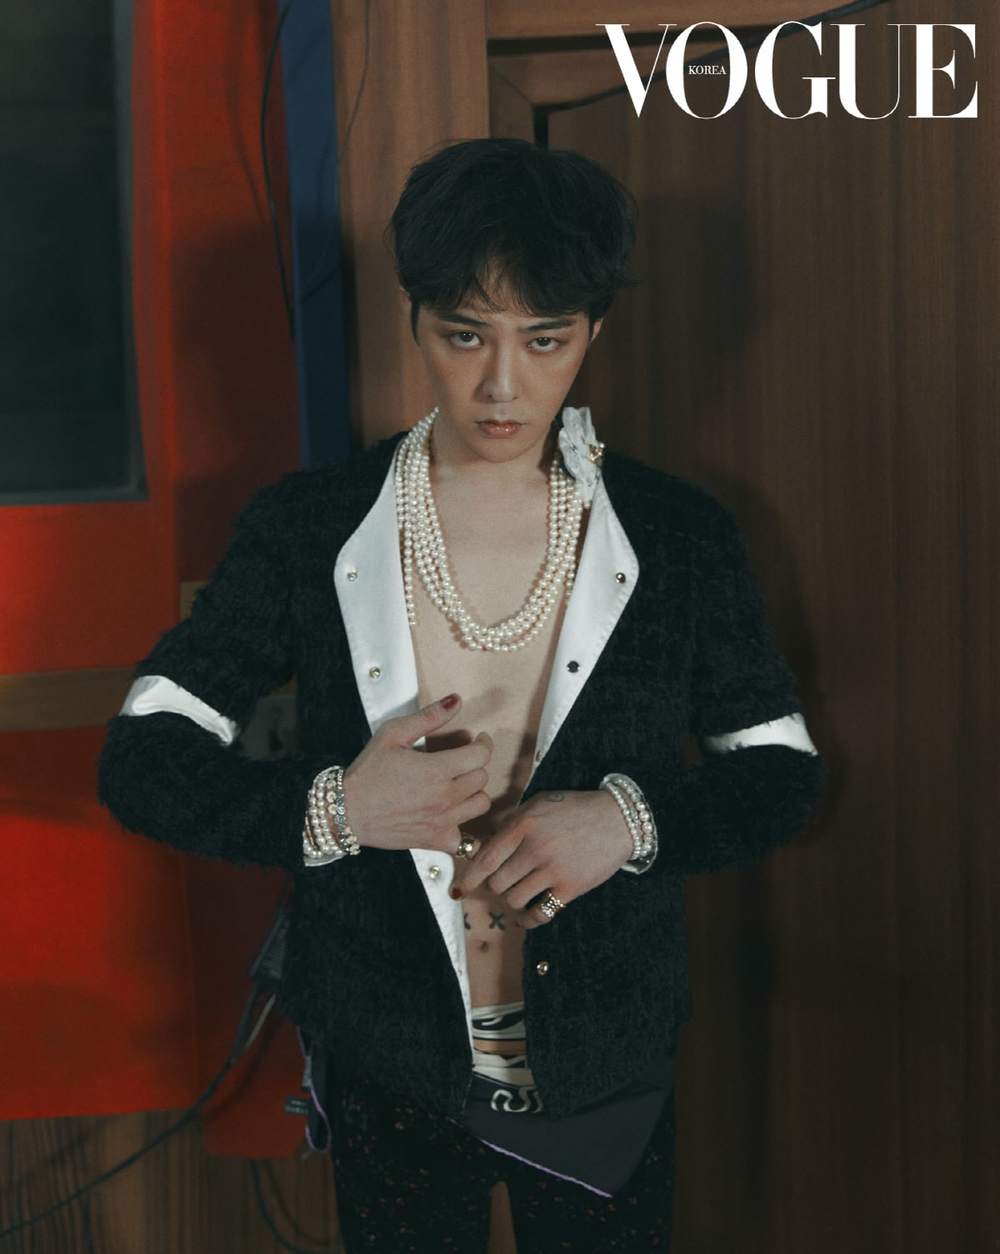  
Phong cách thời trang sang chảnh của G-Dragon. (Ảnh: Vogue)